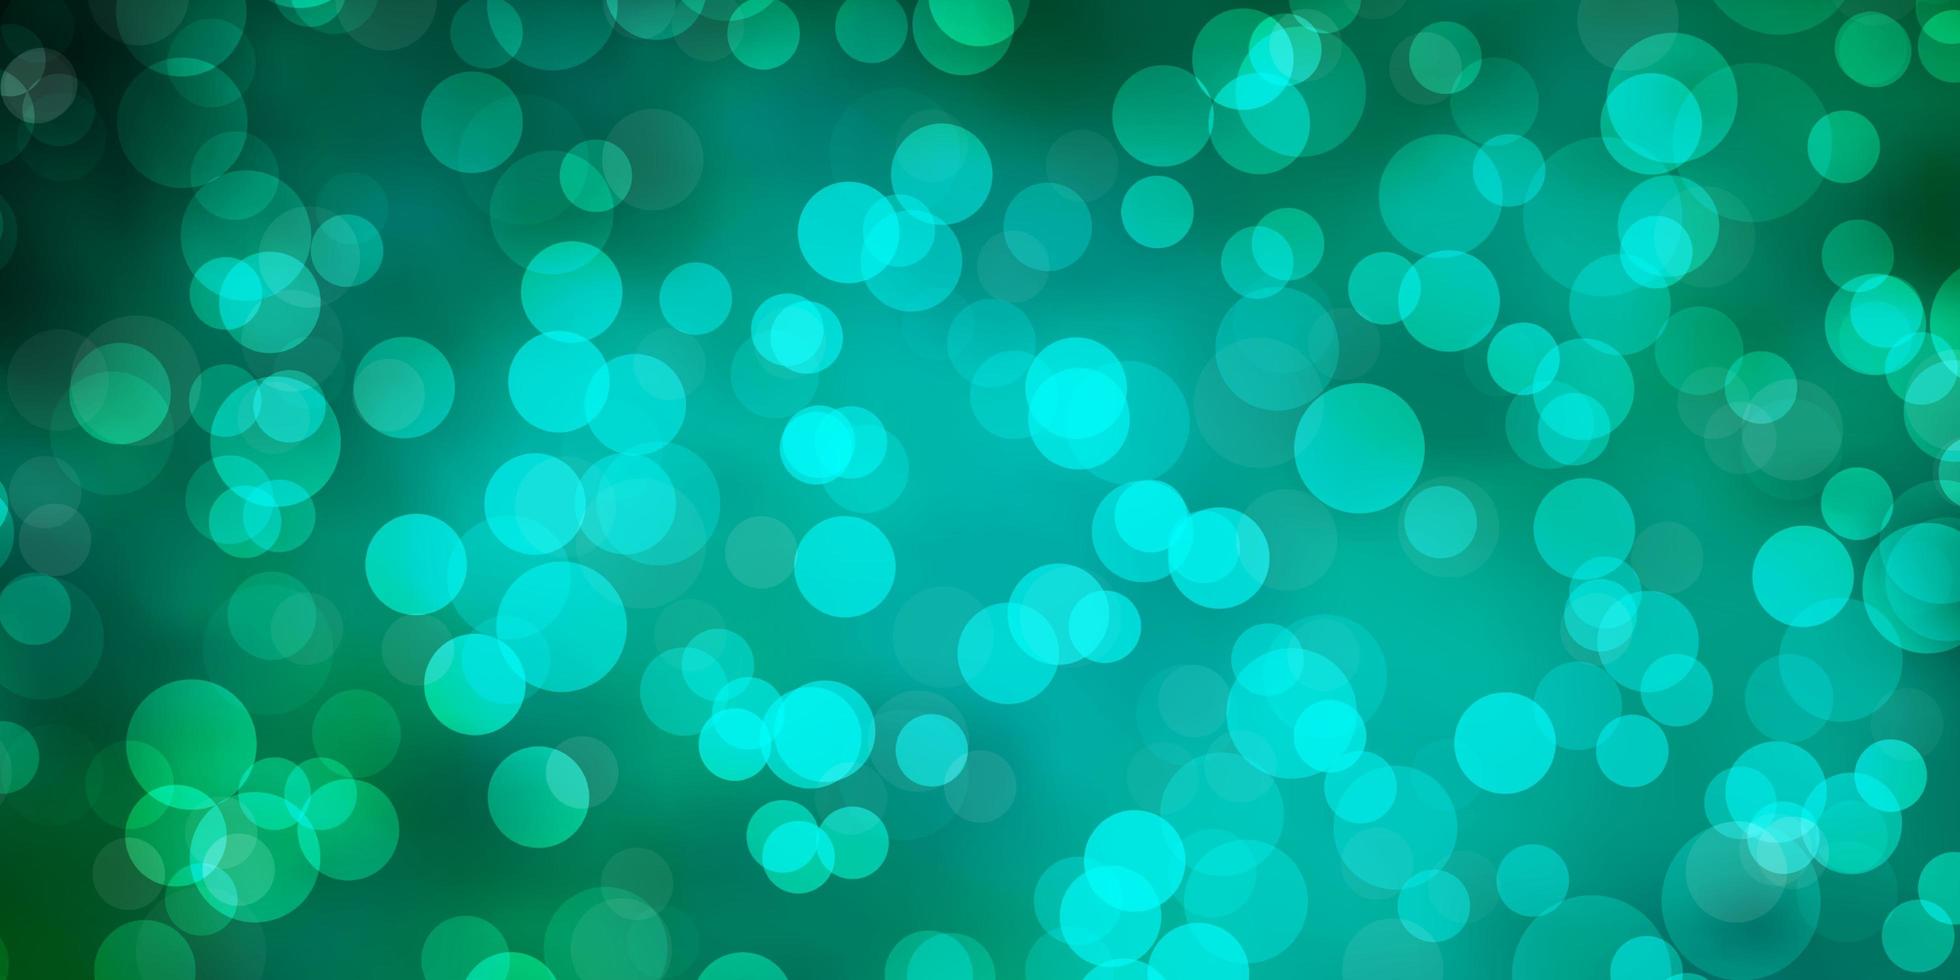 fundo de vetor verde claro com ilustração de manchas com conjunto de padrão de esferas abstratas coloridas brilhantes para cortinas de papéis de parede